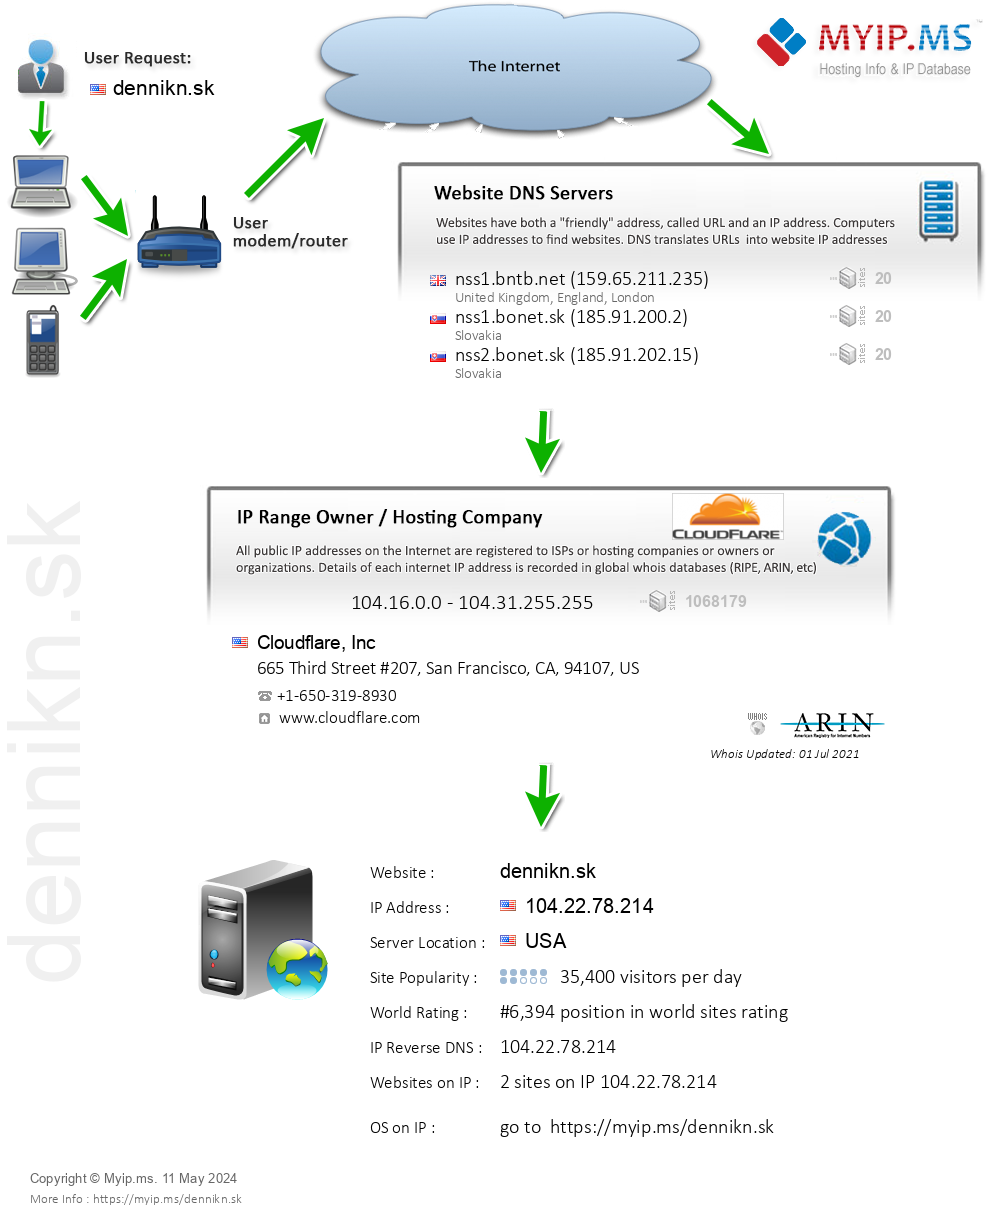 Dennikn.sk - Website Hosting Visual IP Diagram